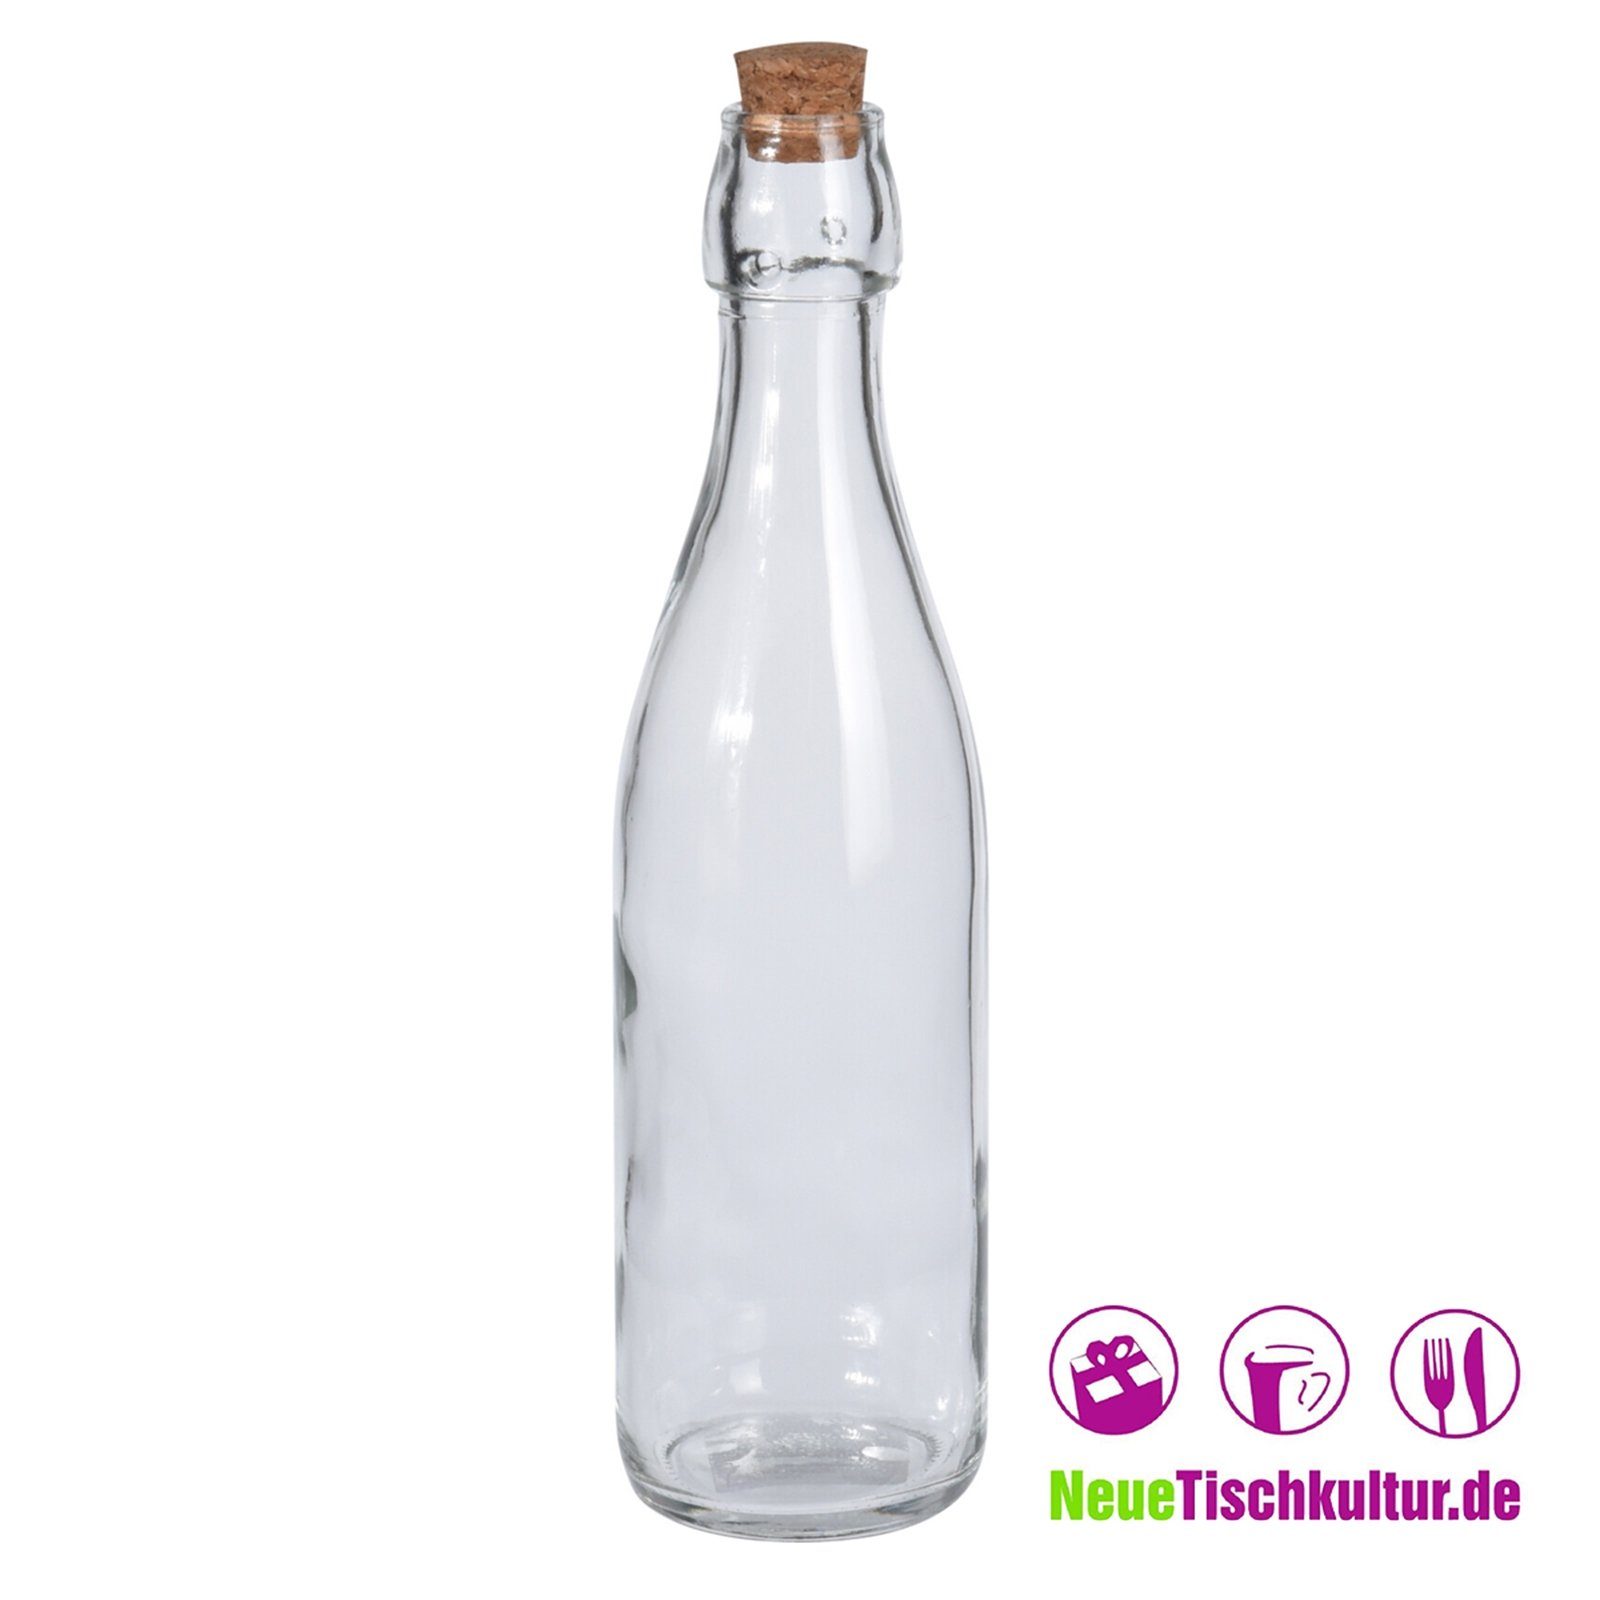 Neuetischkultur Glasflasche Korkverschluss, Liter 0,5 Glas Vorratsglas mit